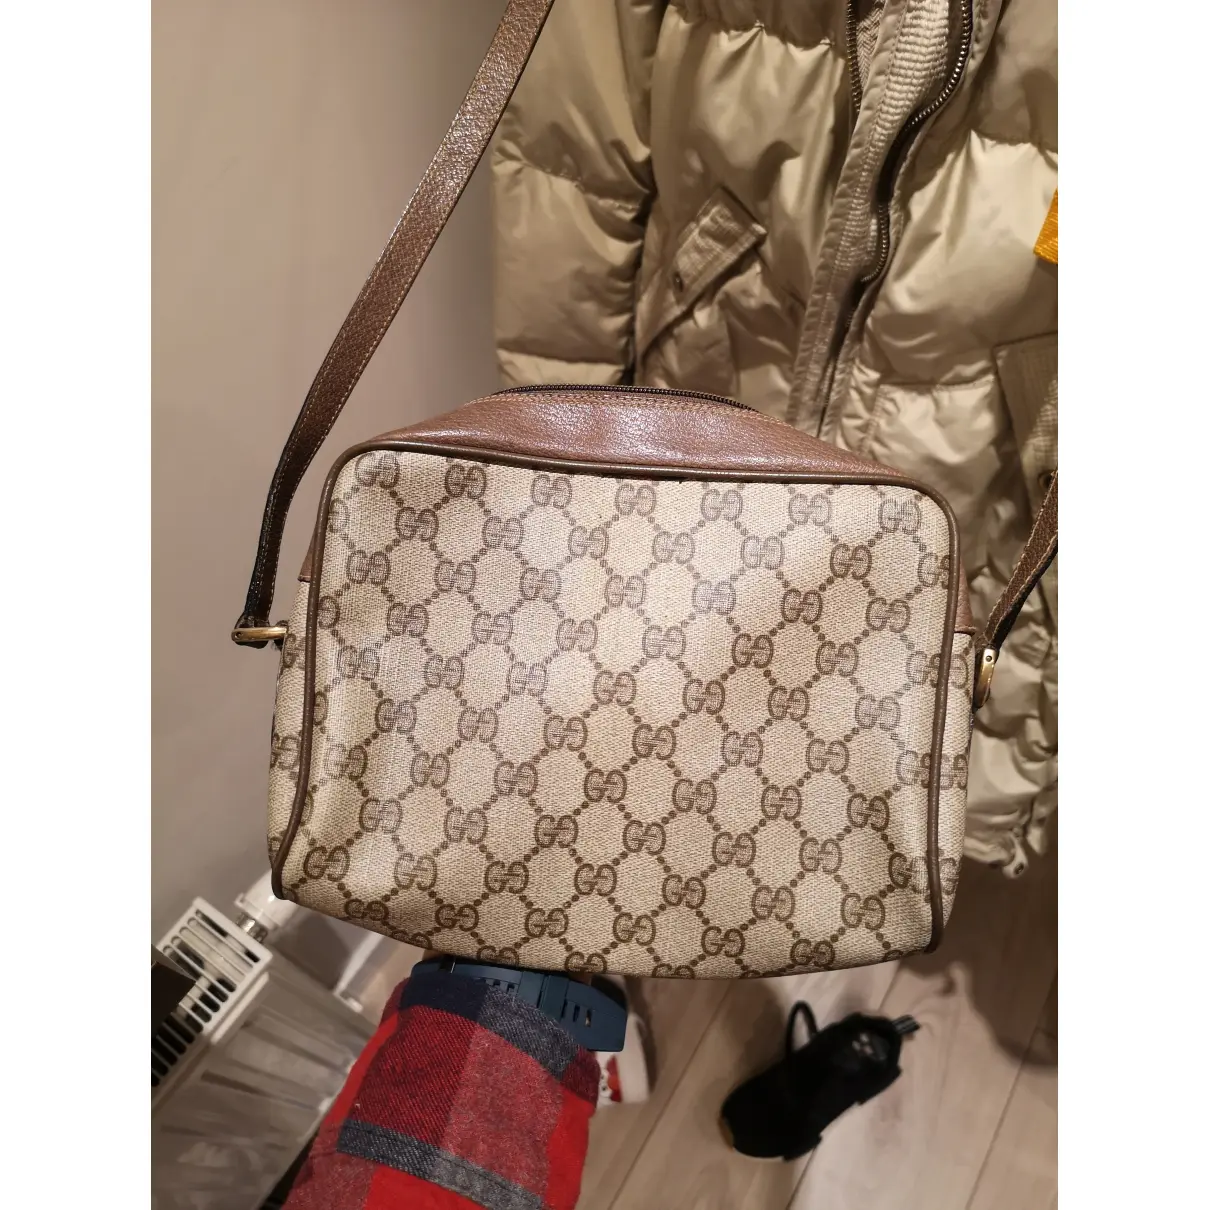 Buy Gucci Ophidia cloth handbag online - Vintage